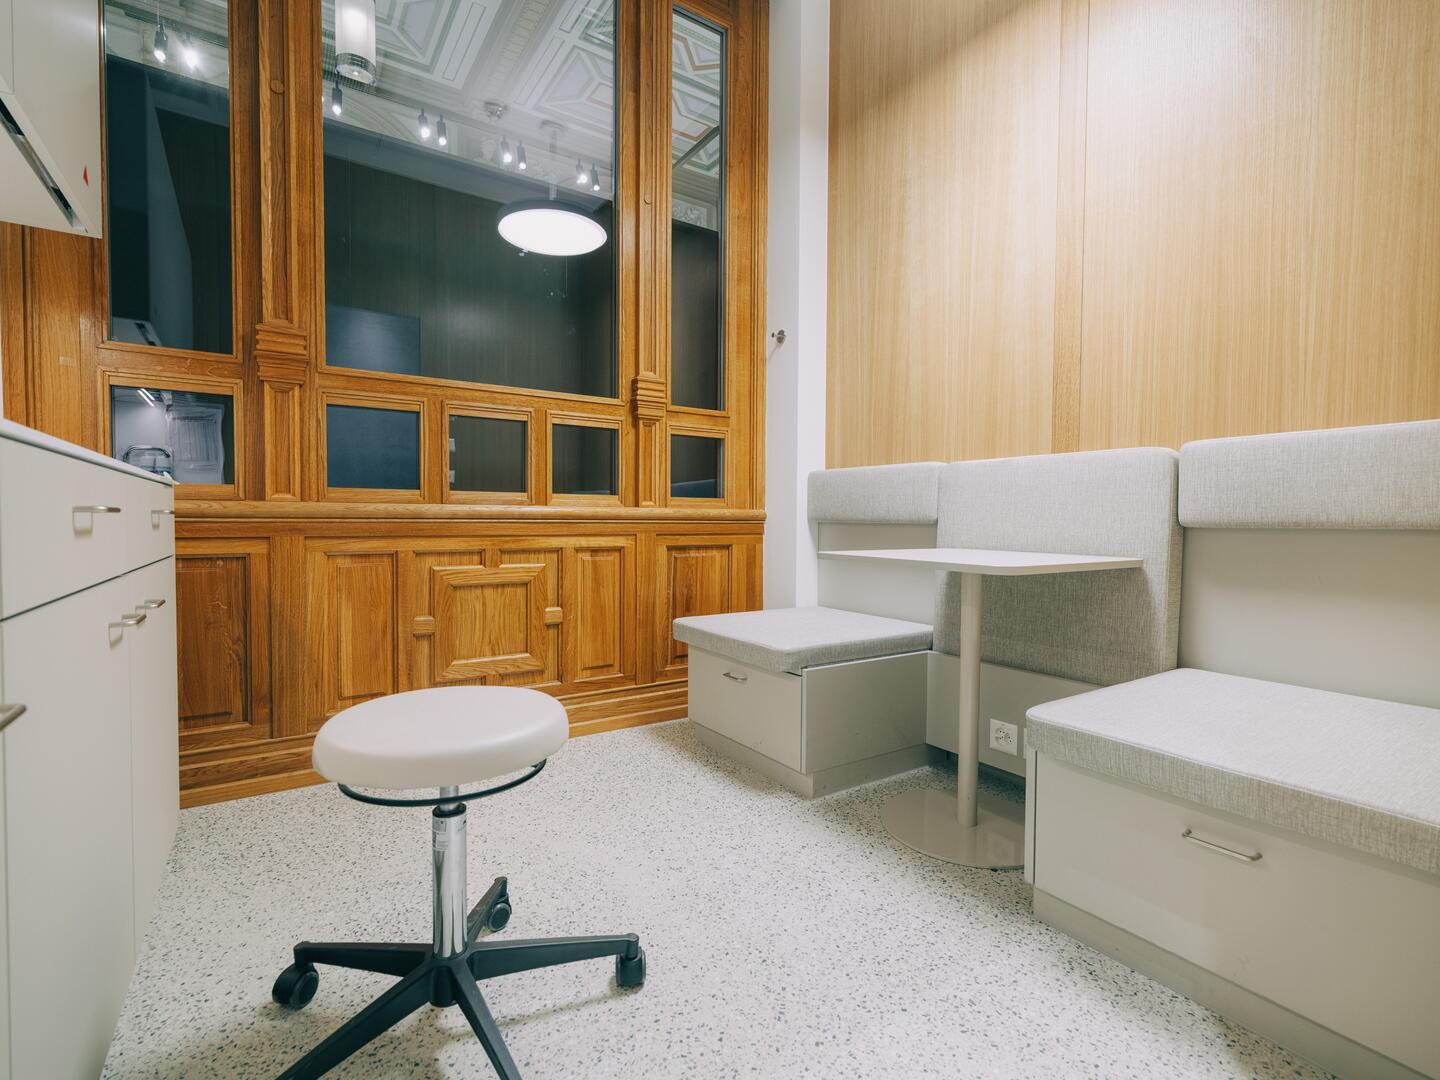 Behandlungsraum, modern eingerichtet